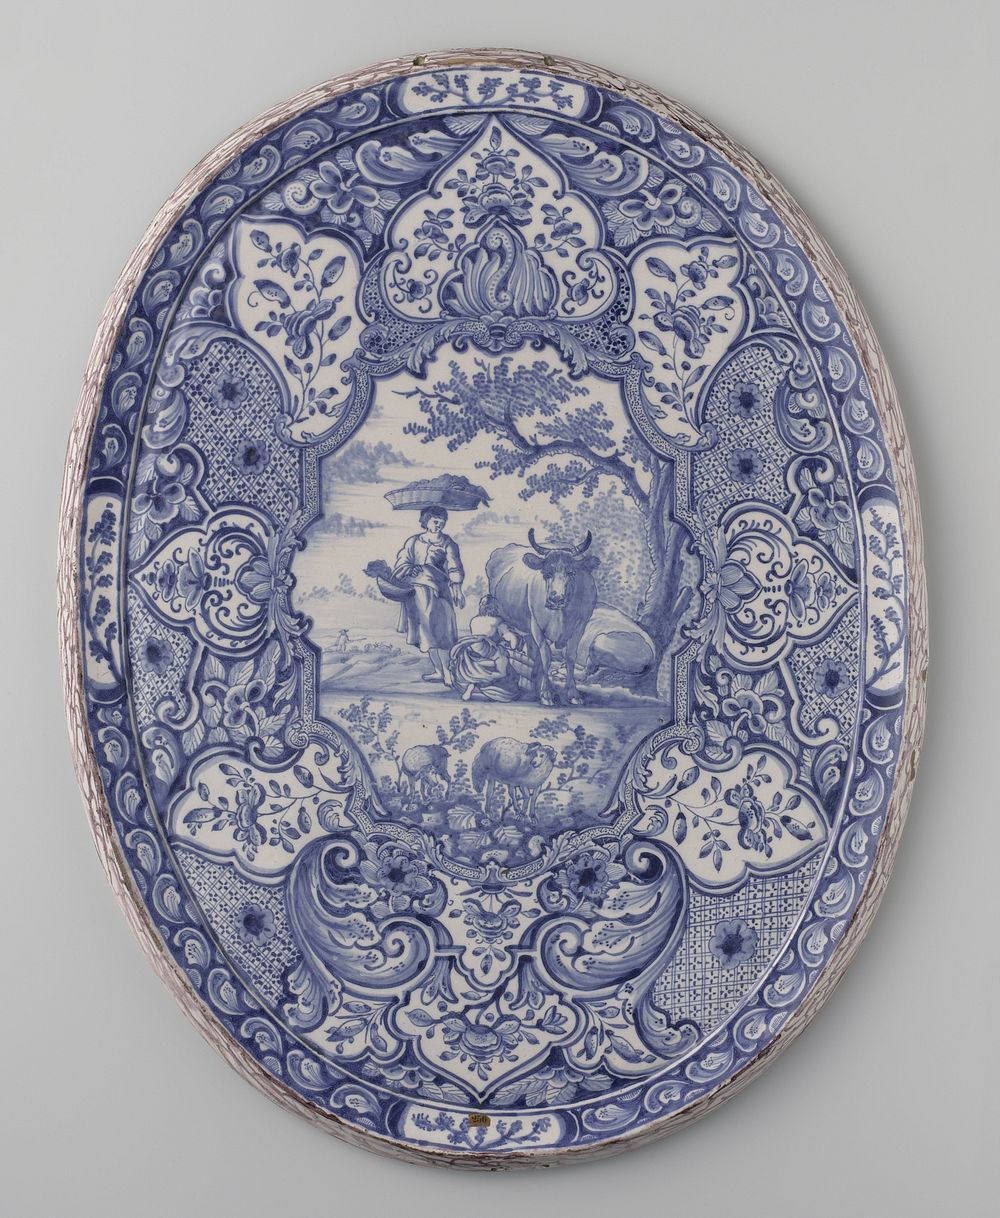 Plaat met paars gemarmerde rand en beschilderd in blauw met landelijke scene (c. 1740 - c. 1770) by anonymous